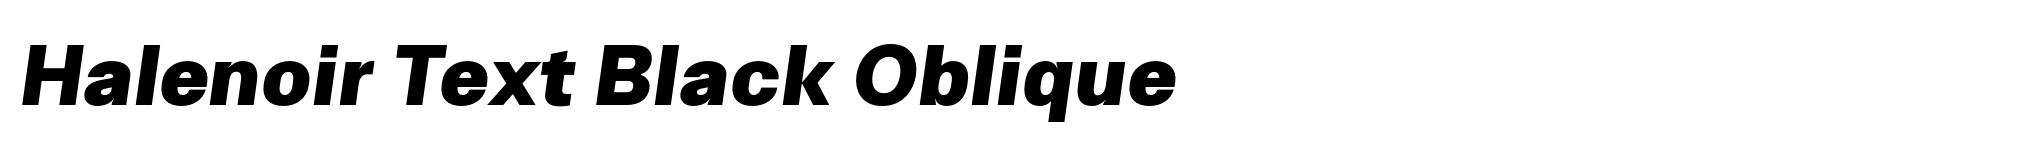 Halenoir Text Black Oblique image